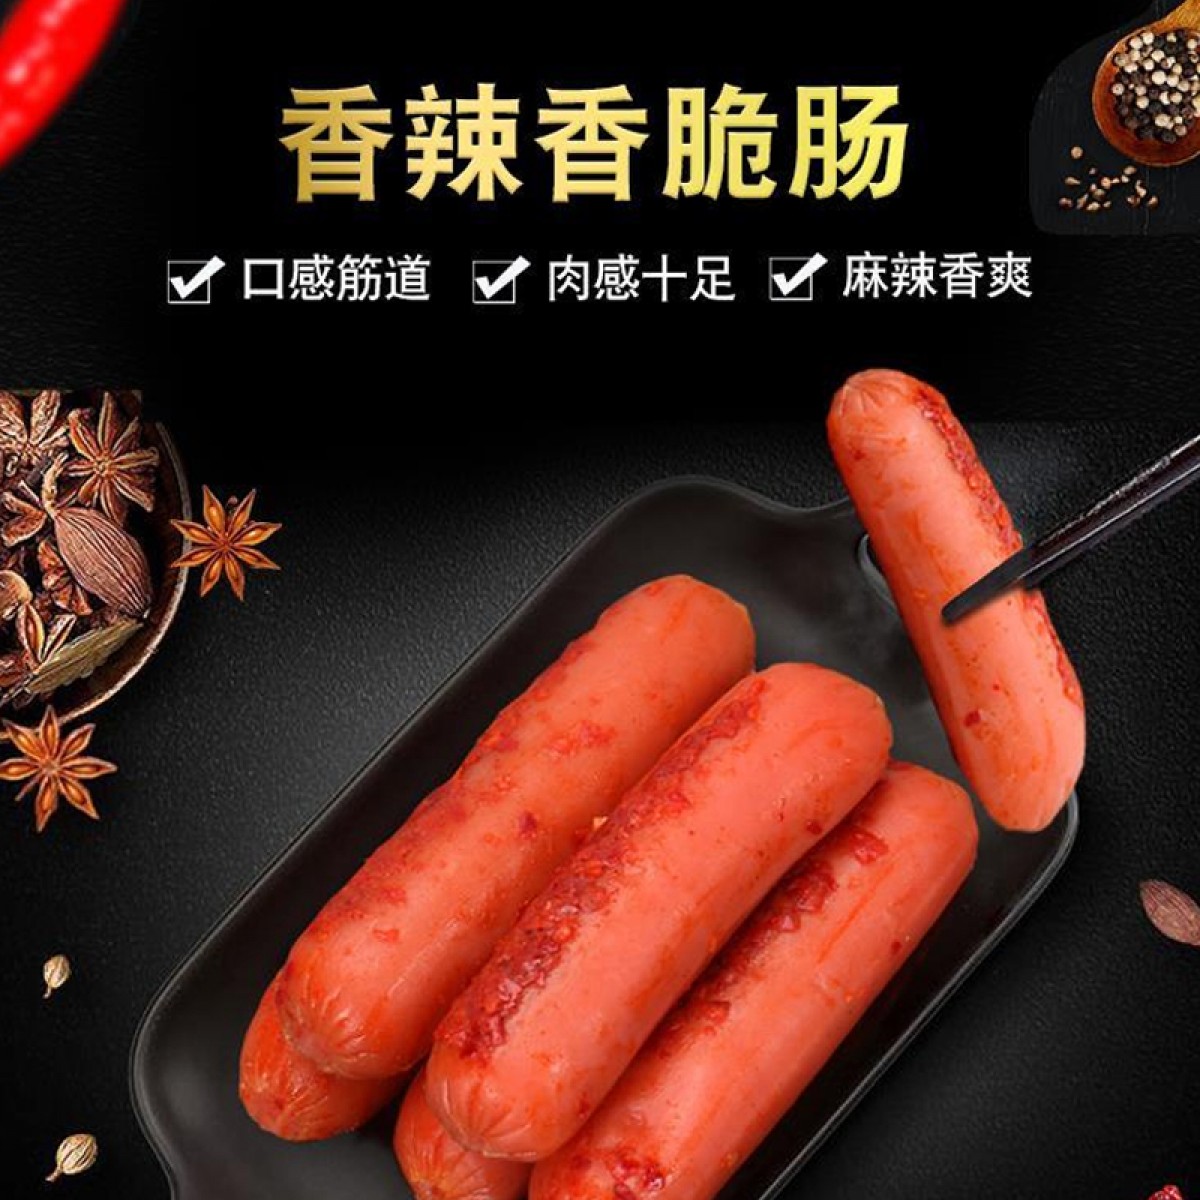 【豬肉製品】台灣農業部驗出中國製「香辣香脆腸」含新型非洲豬瘟 | Health Concept